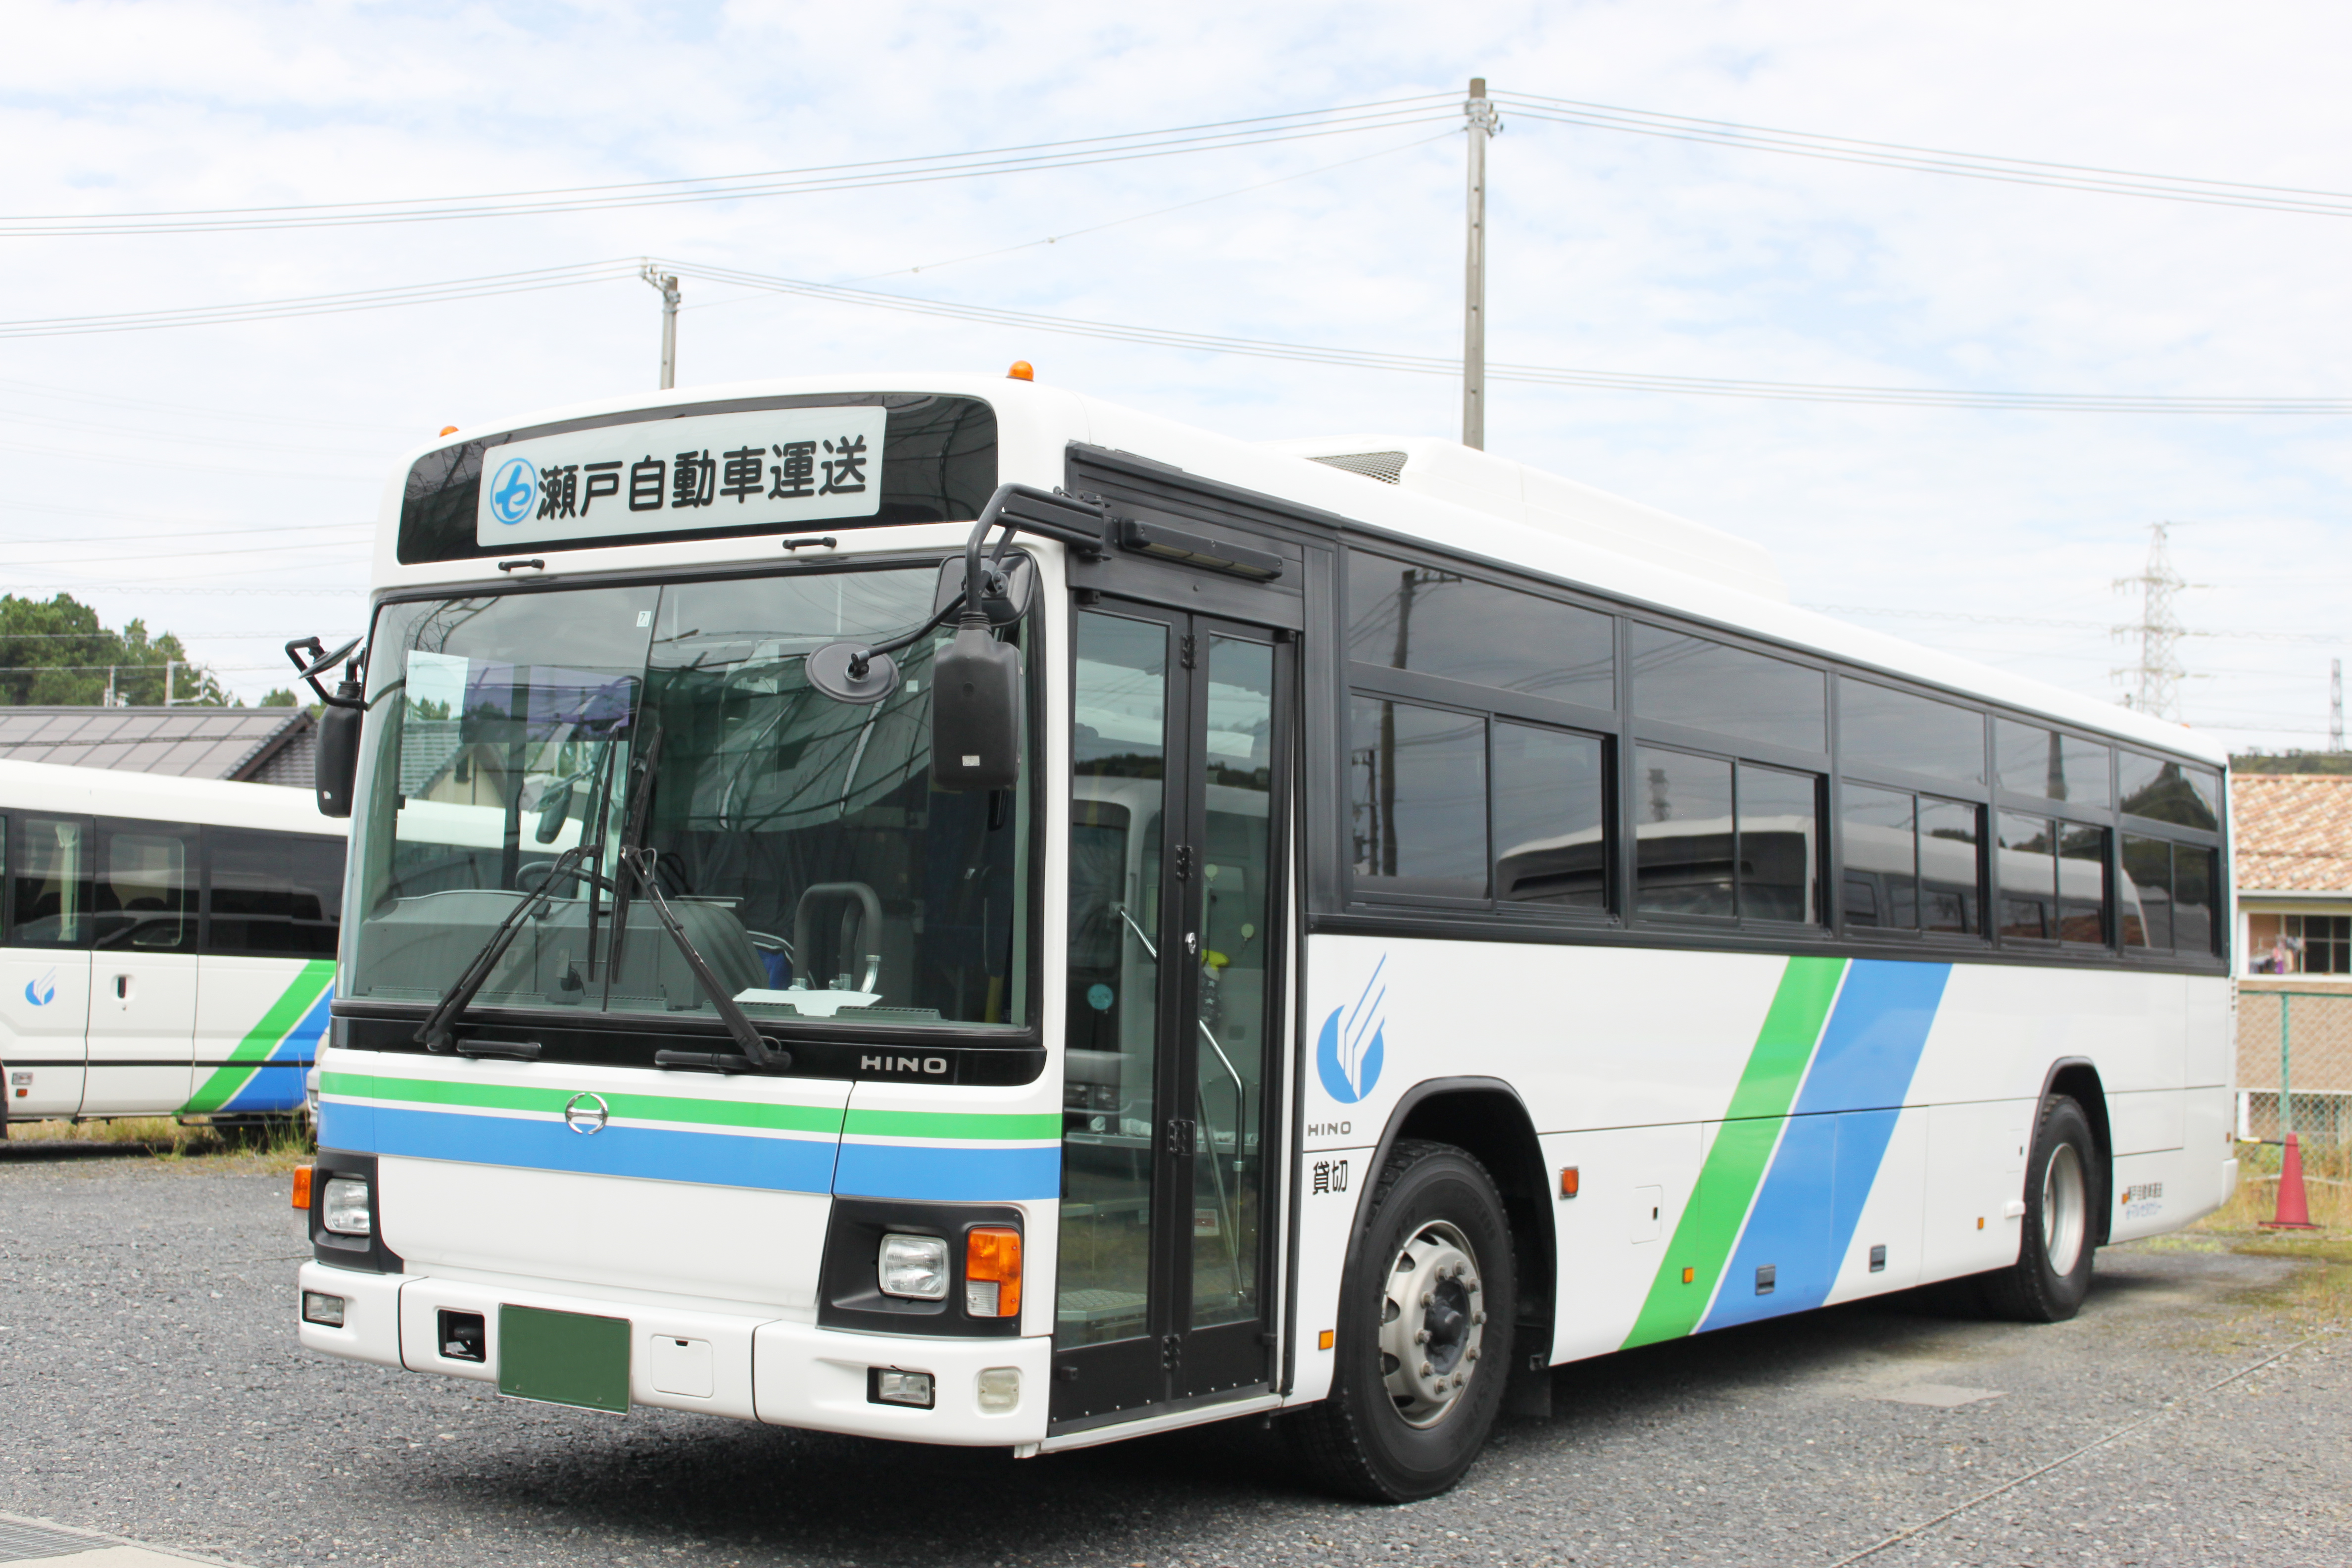 瀬戸自動車運送株式会社 マルセタクシー/送迎ドライバー(中型バス)